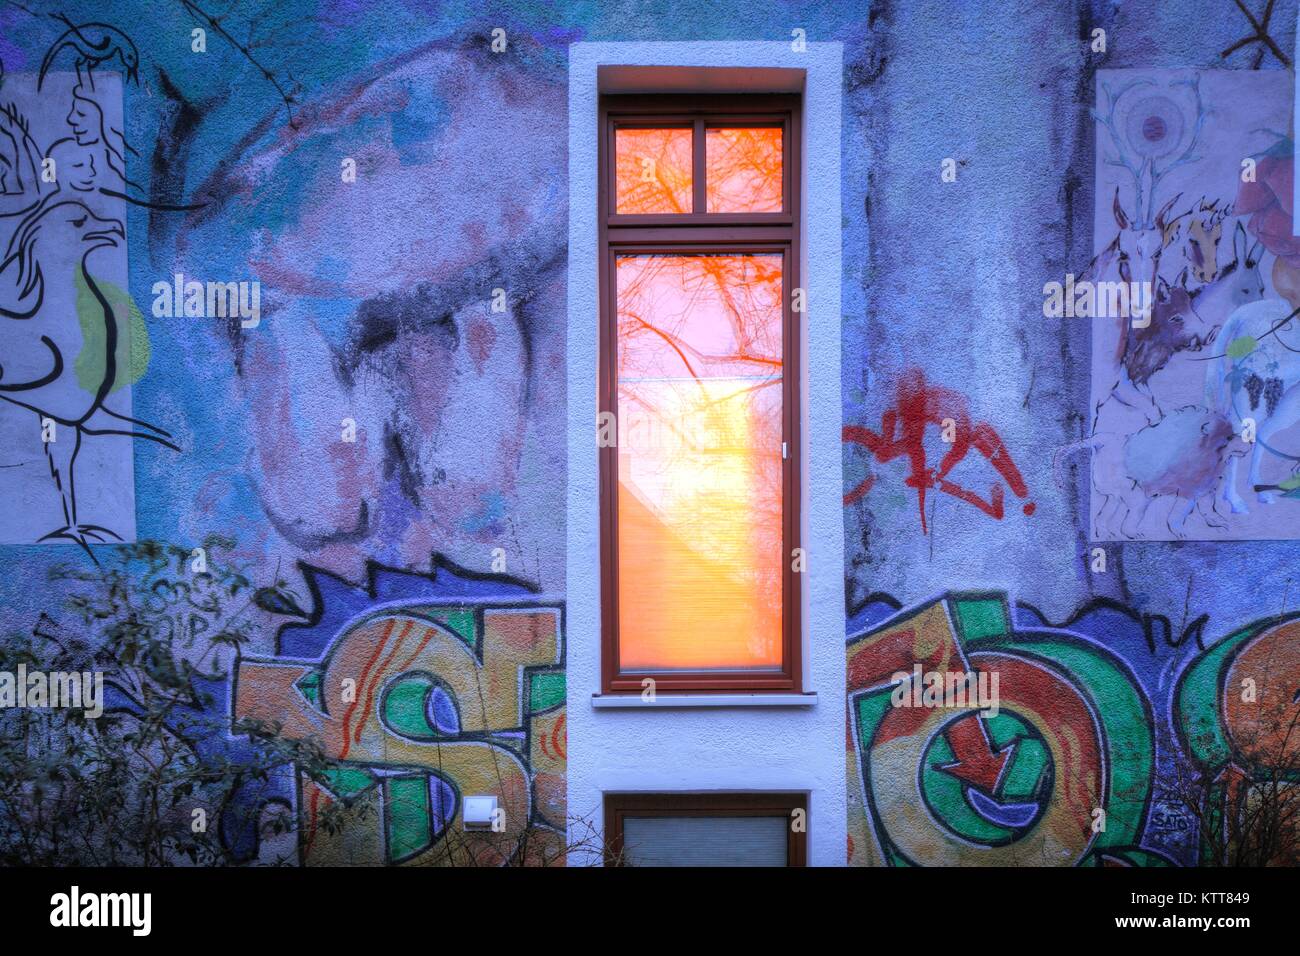 Beleuchtetes Fenster,  Hauswand  mit Graffiti  im  Ostertorviertel bei Abenddämmerung, Bremen, Deutschland, Europa  IOld House Wall and window with Gr Stock Photo